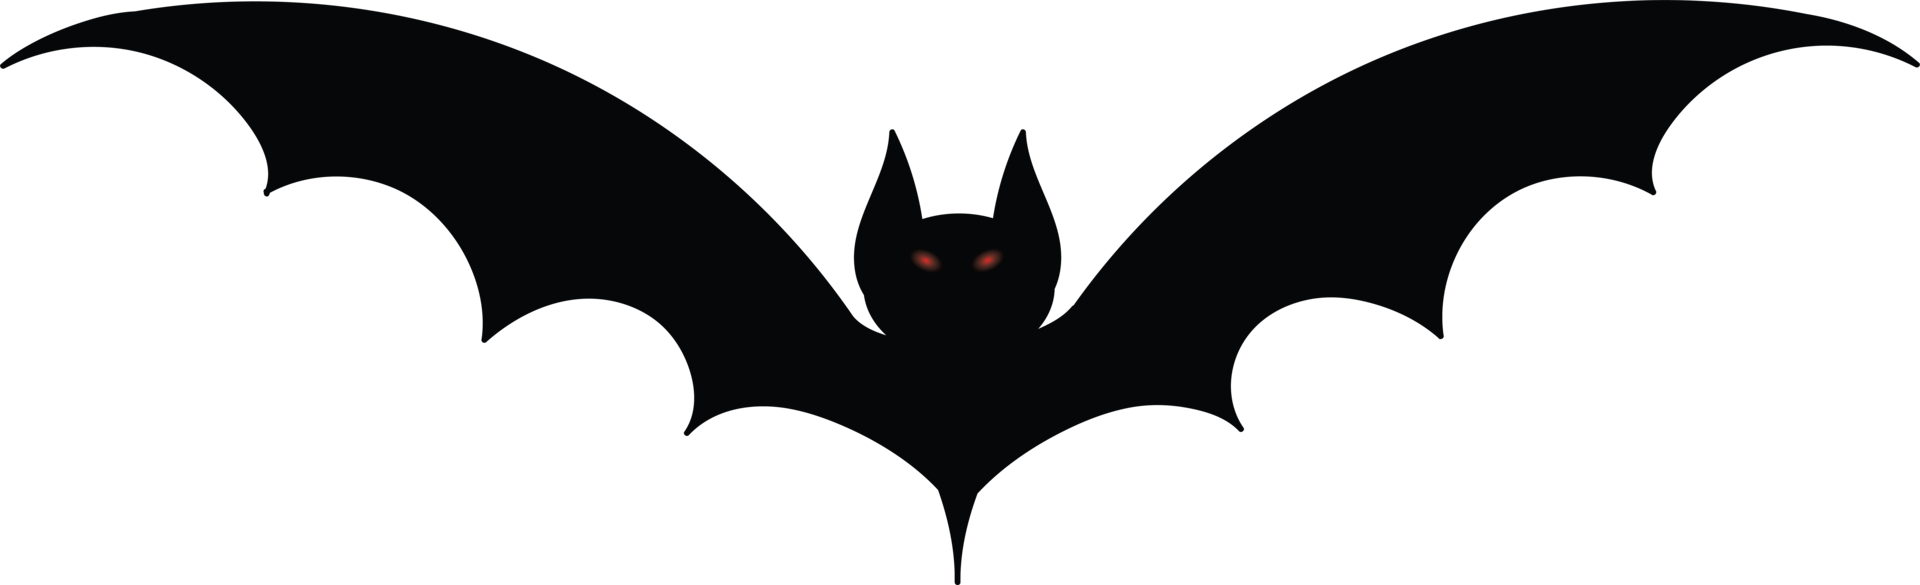 bat  for design png